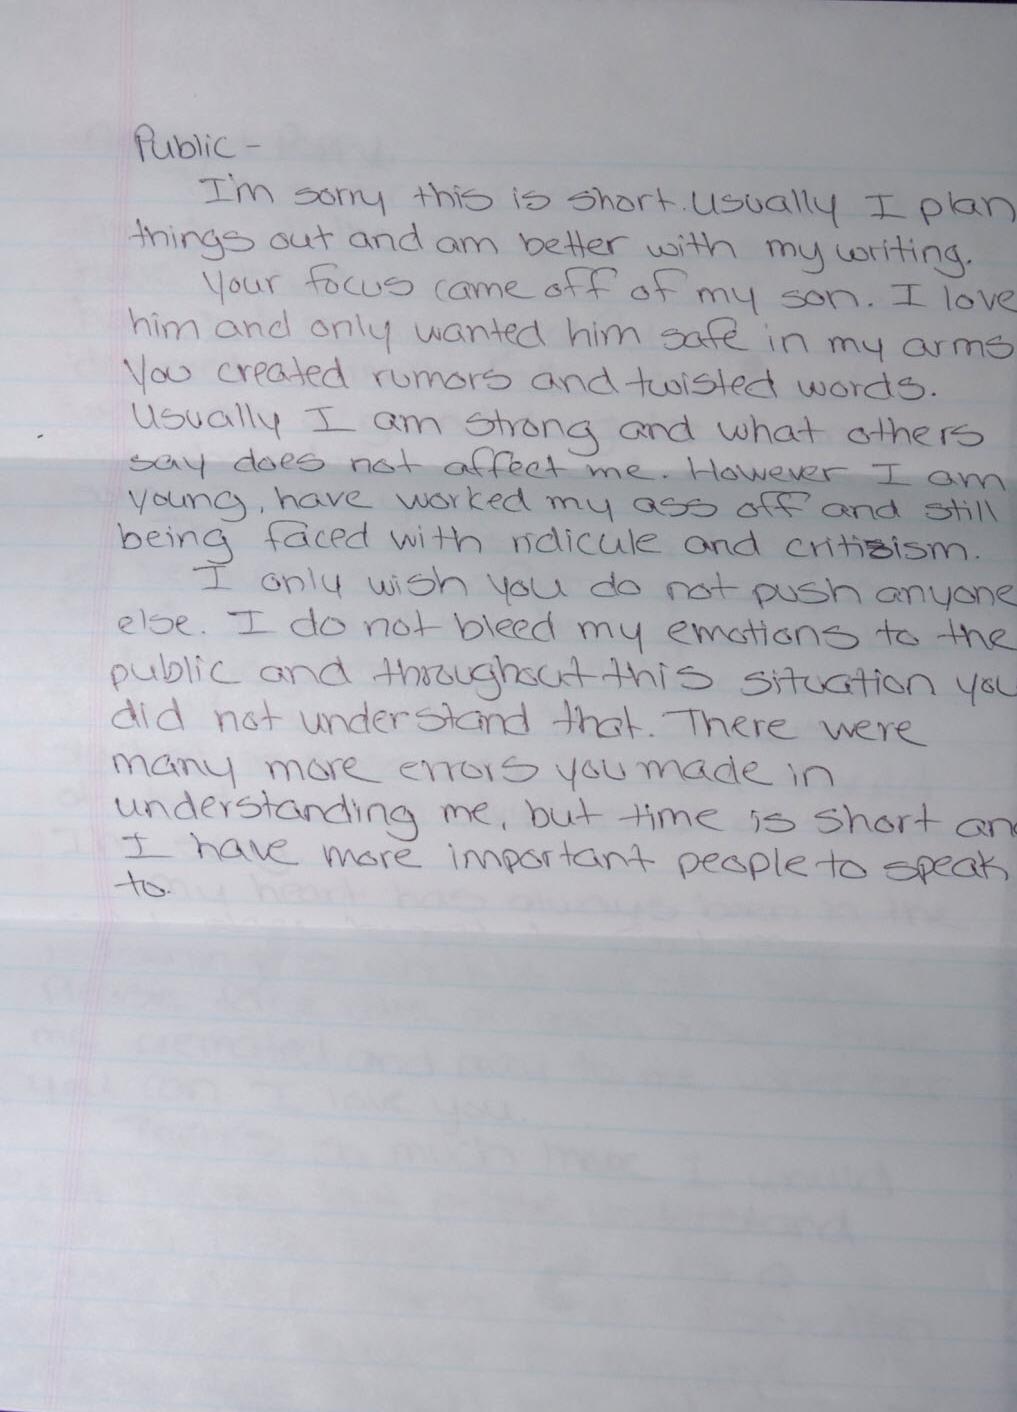 Statement Analysis ® Melinda Duckett Statement Analysis of Suicide Note